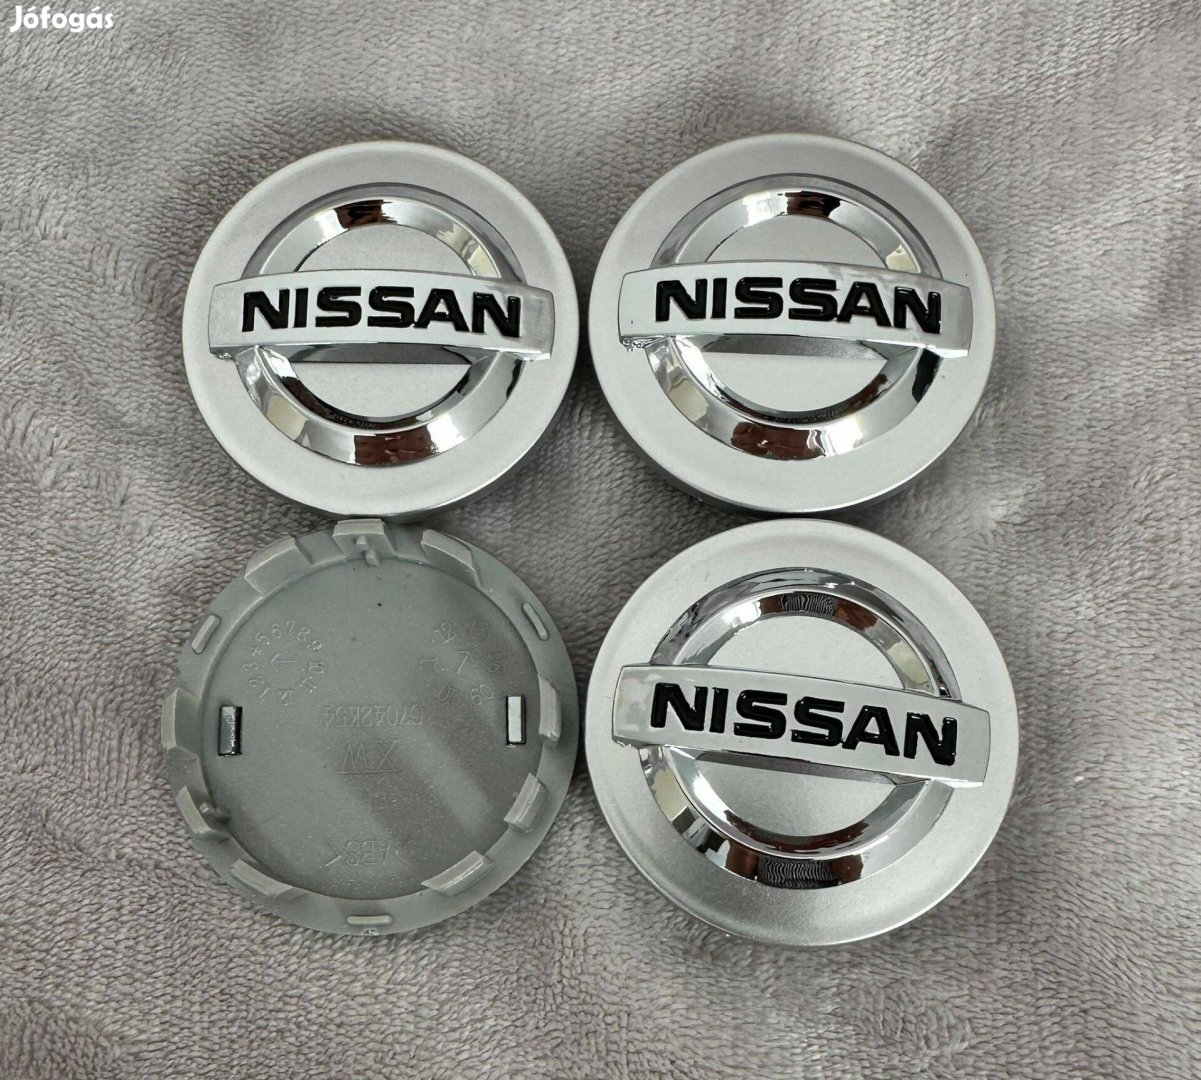 Nissan 54mm felni alufelni kupak közép felniközép felnikupak embléma